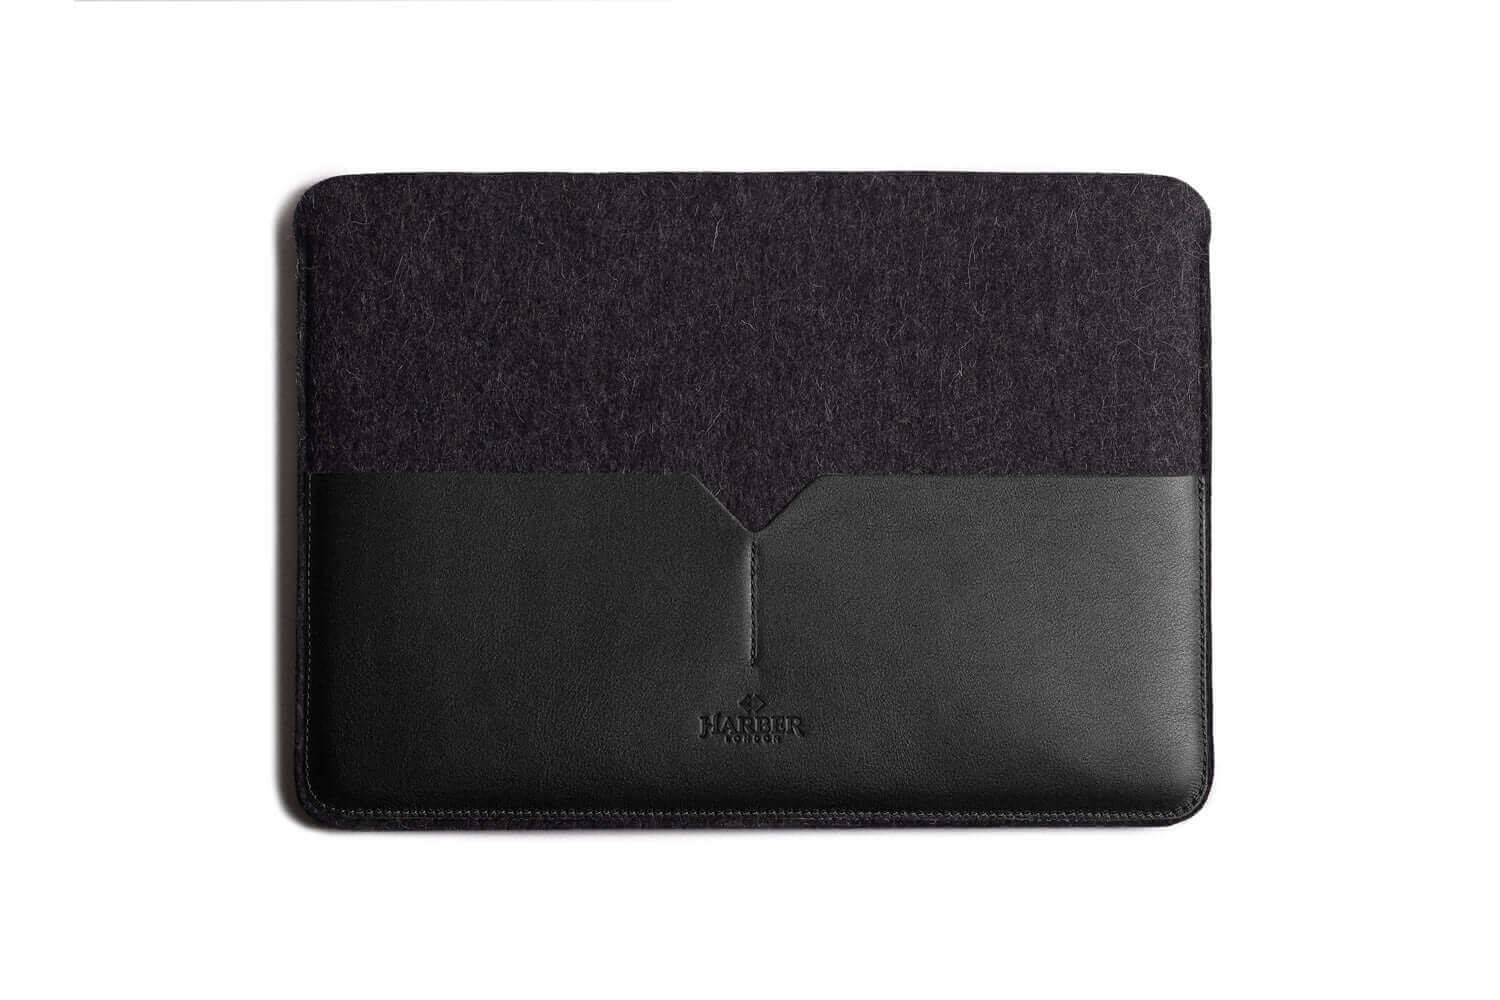 Housse MacBook en cuir noir